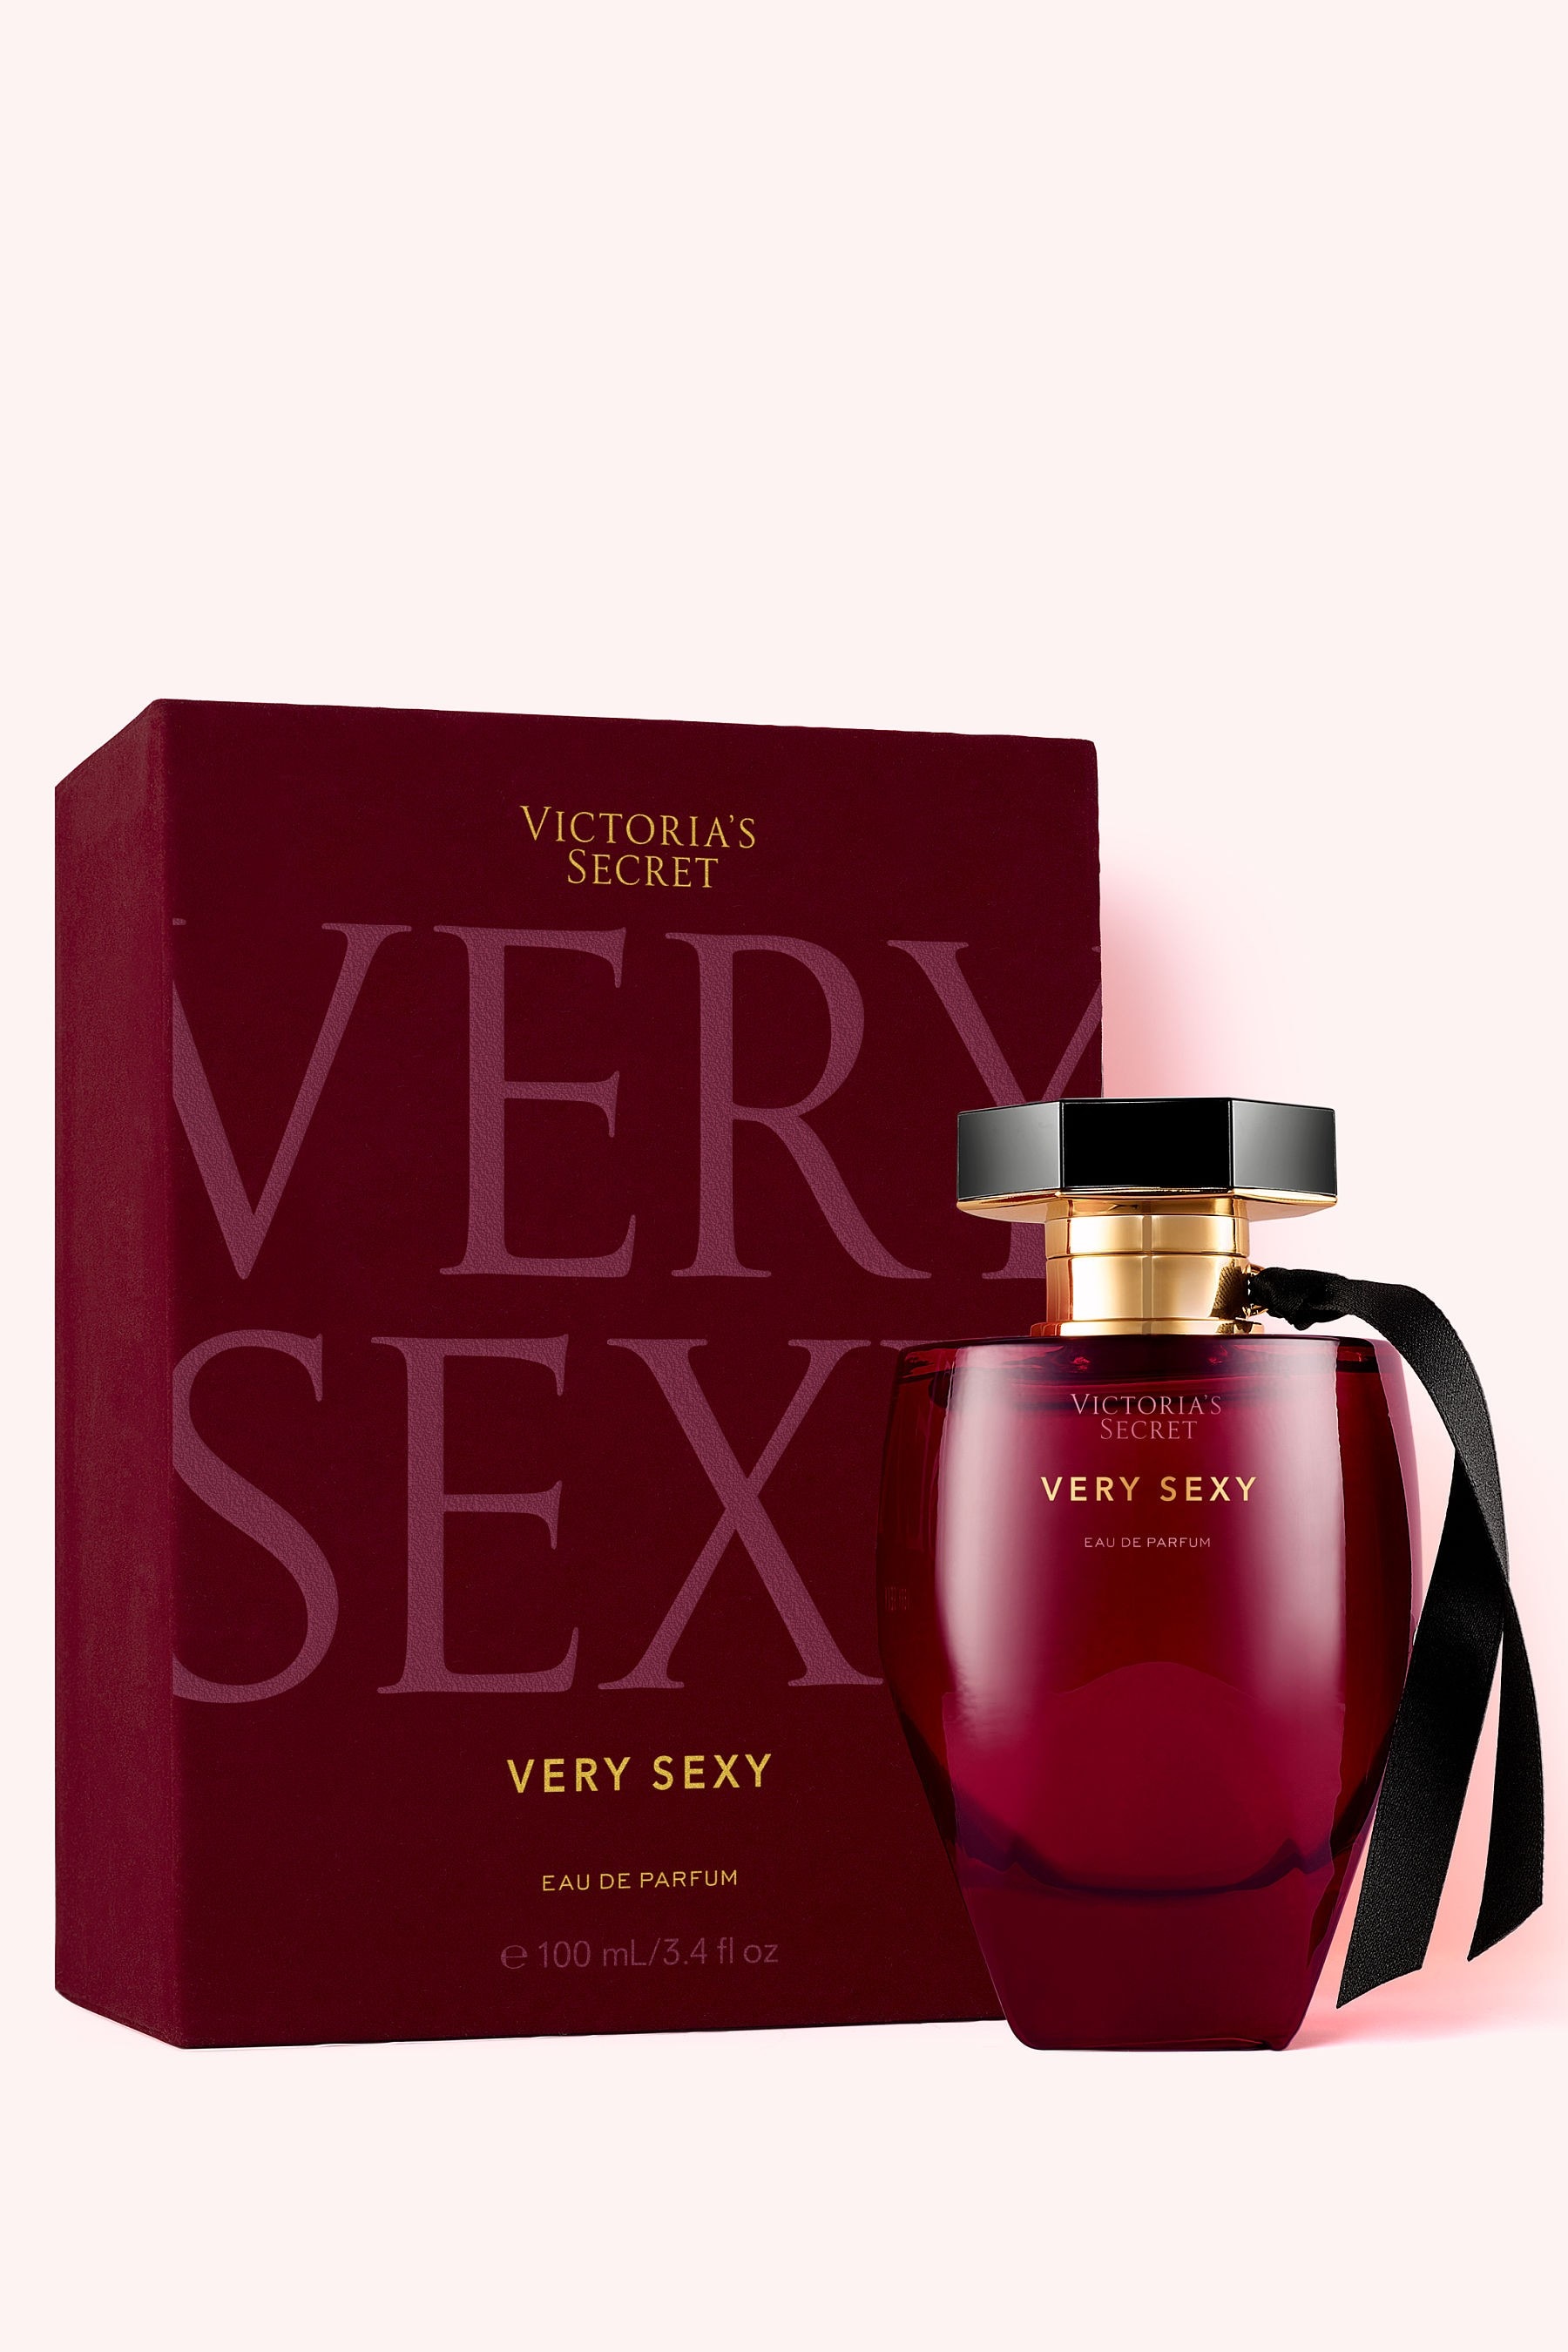 Buy Victoria S Secret Very Sexy Eau De Parfum From The Victoria S Secret Uk Online Shop